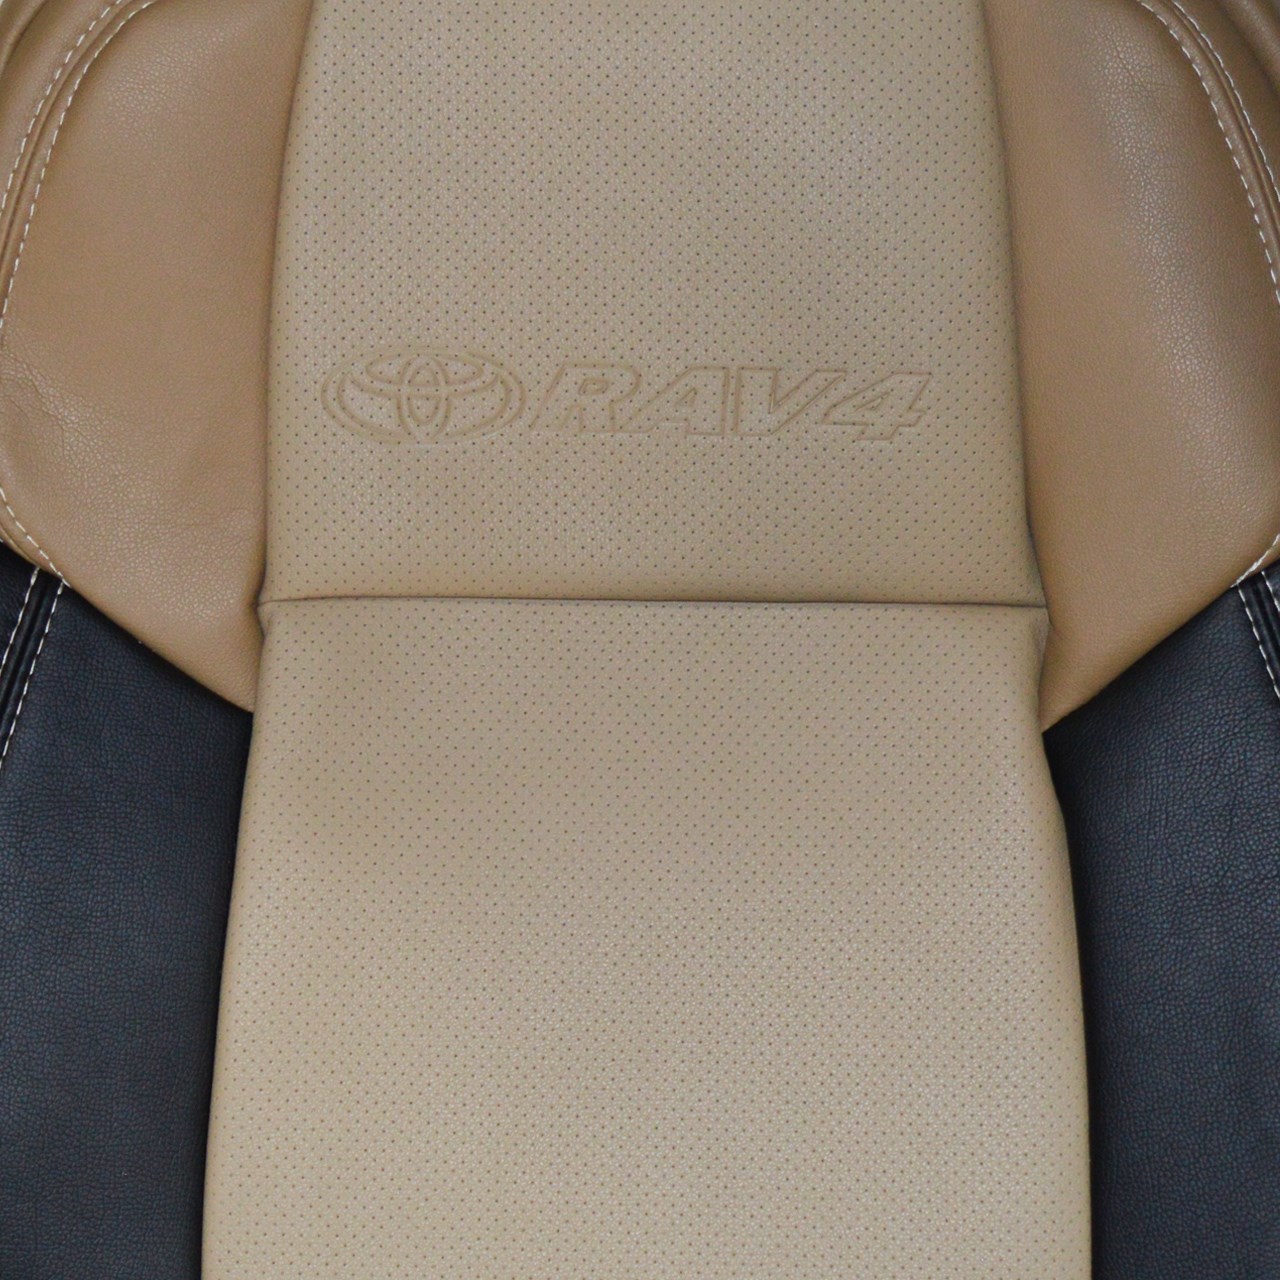 روکش صندلی خودرو یونیک مناسب برای تویوتا راو 4